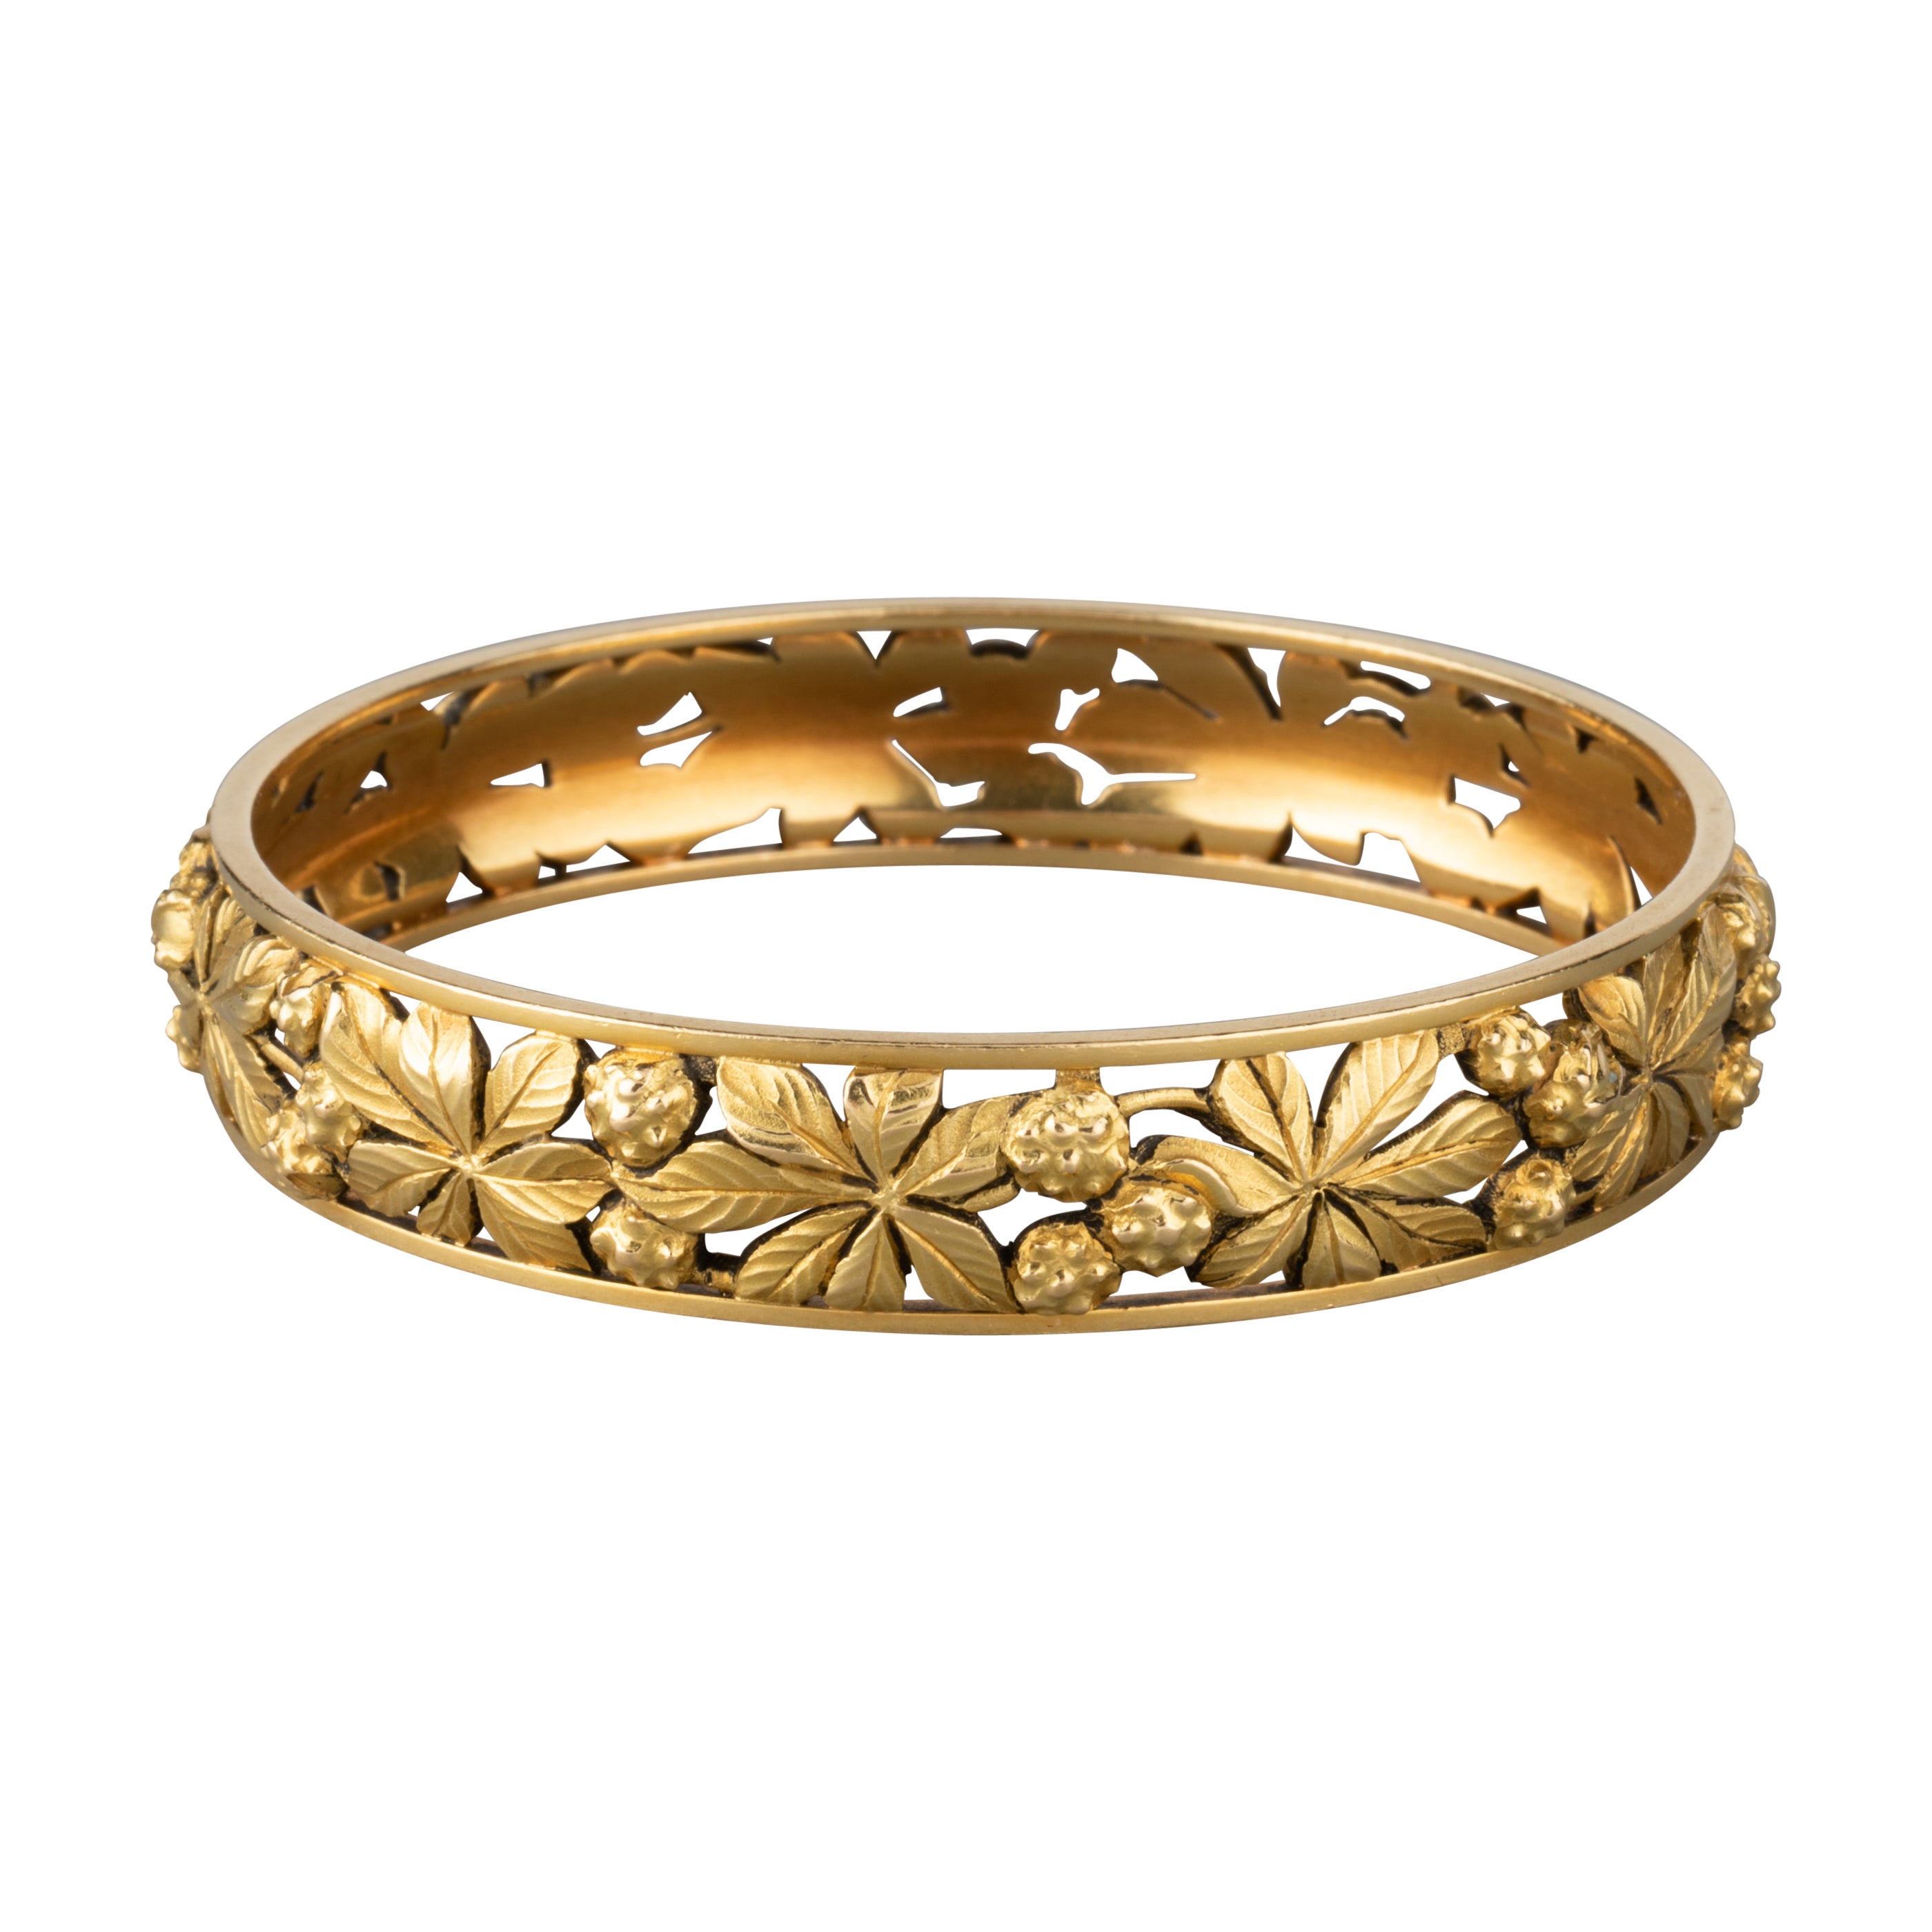 French Antique Gold Bangle Bracelet For Sale